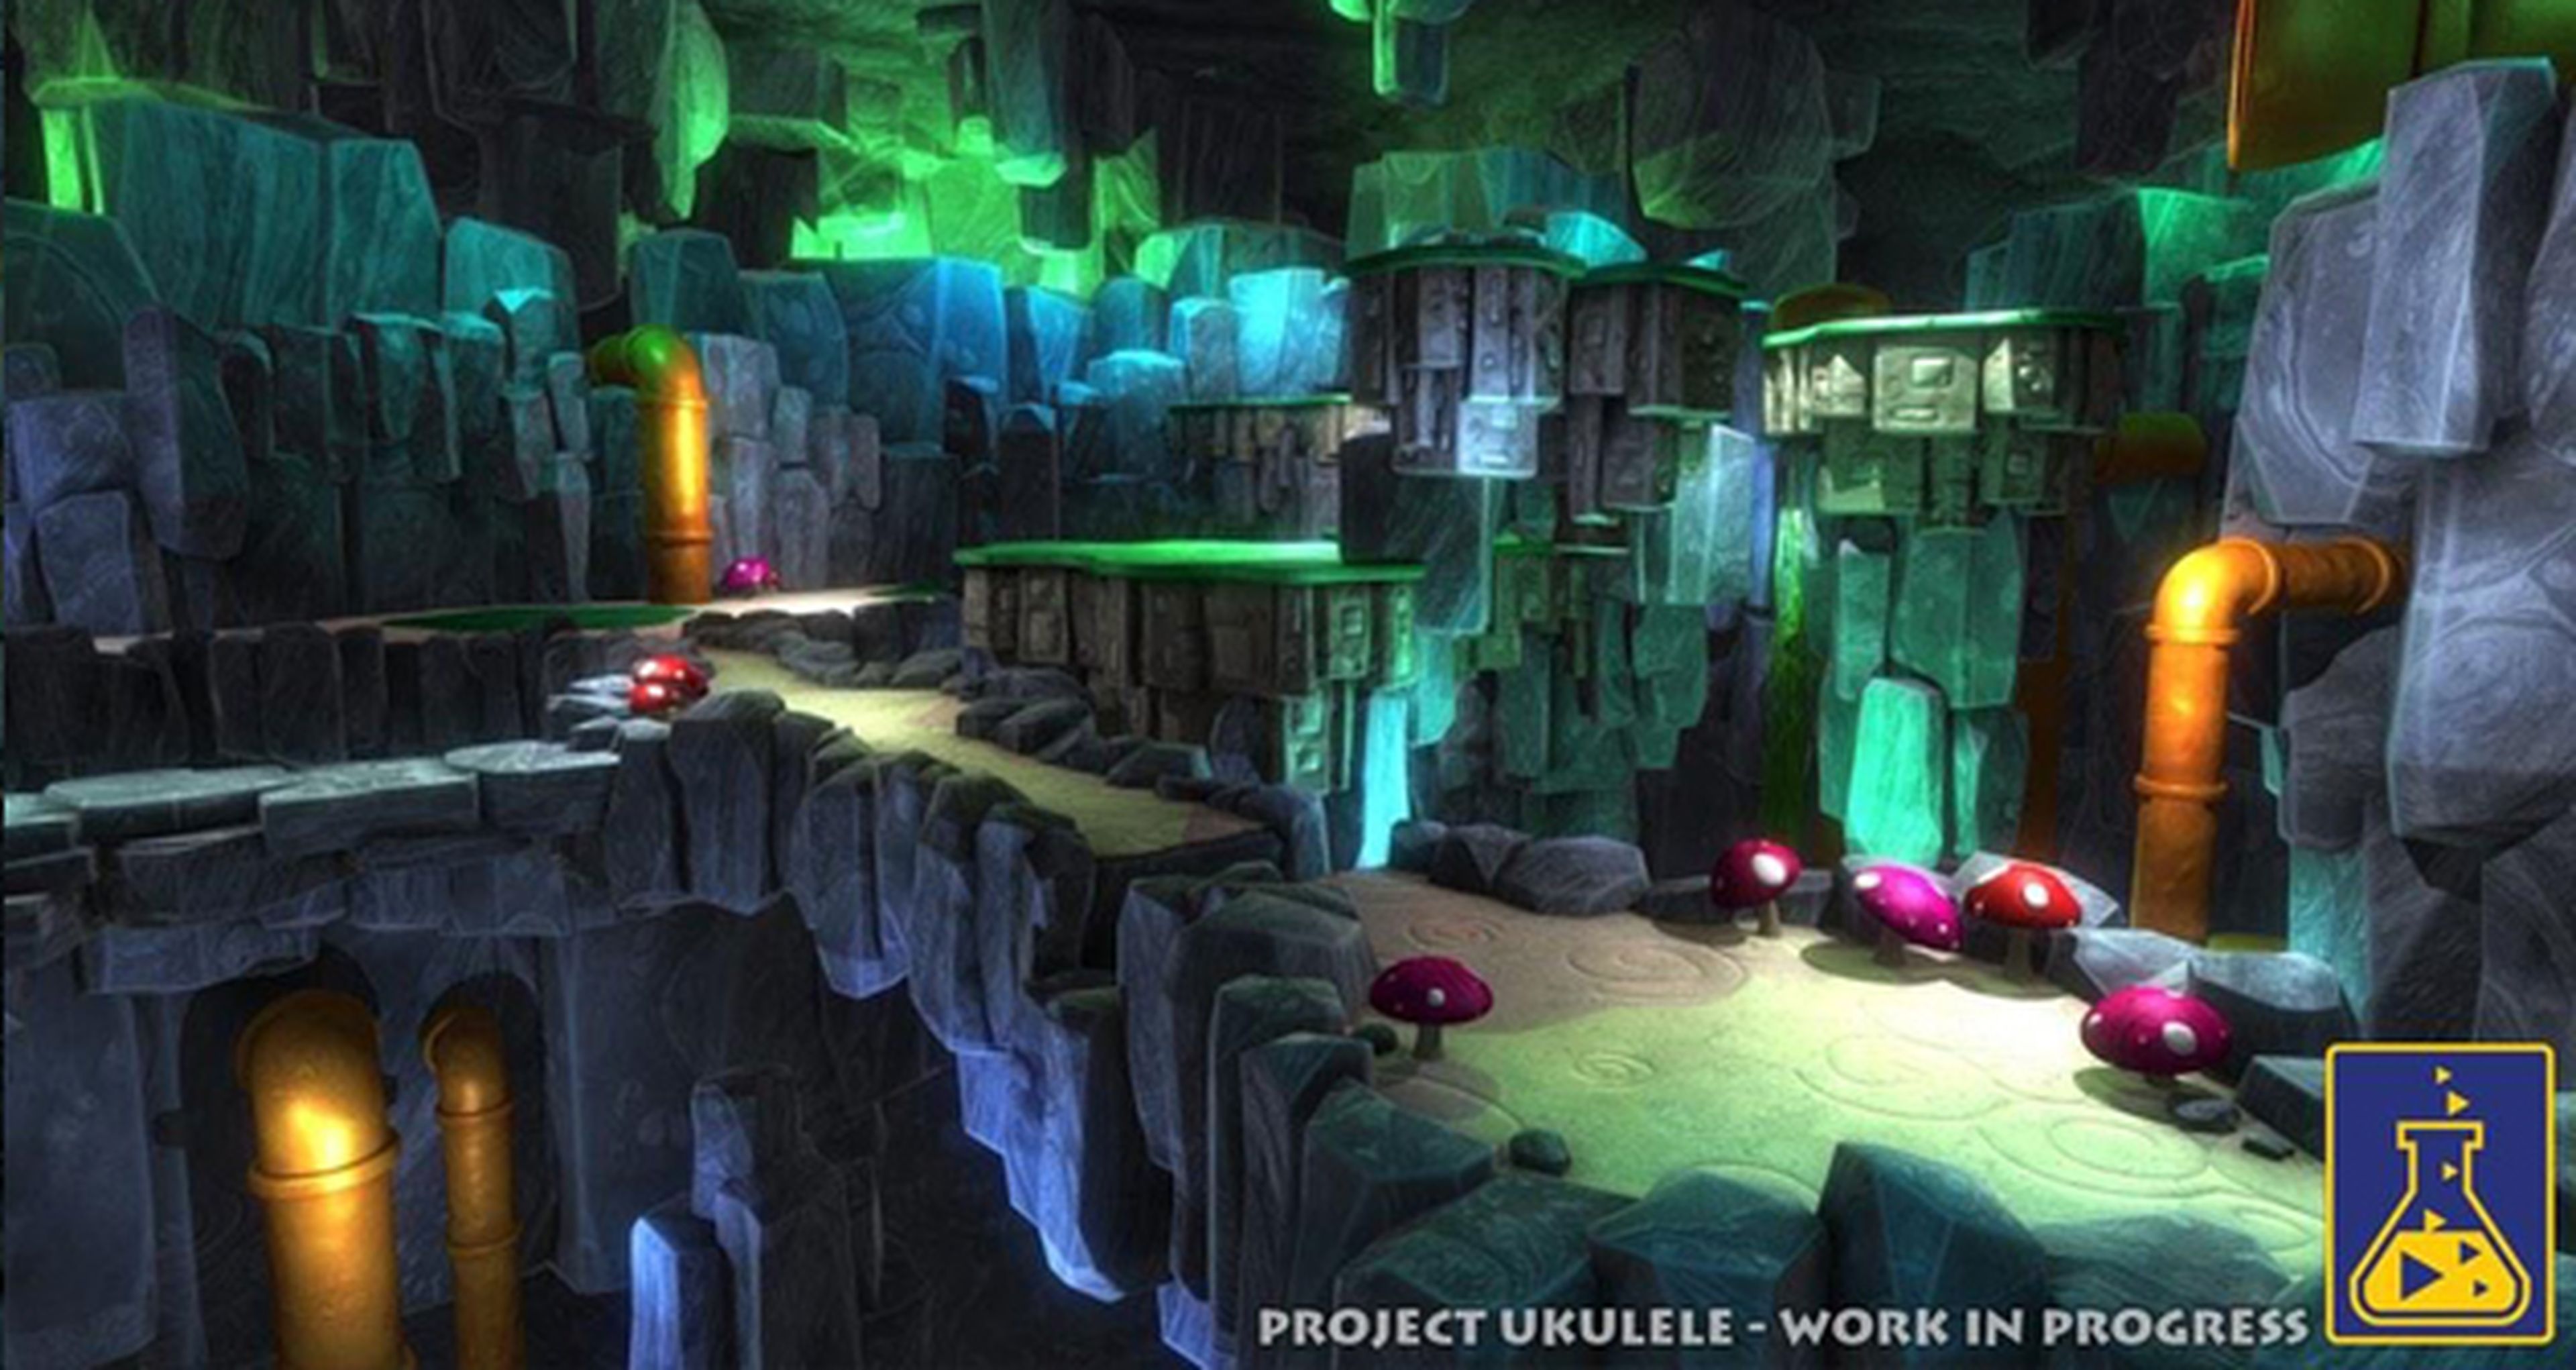 Project Ukulele, sucesor de Banjo-Kazooie, muestra sus primeras imágenes